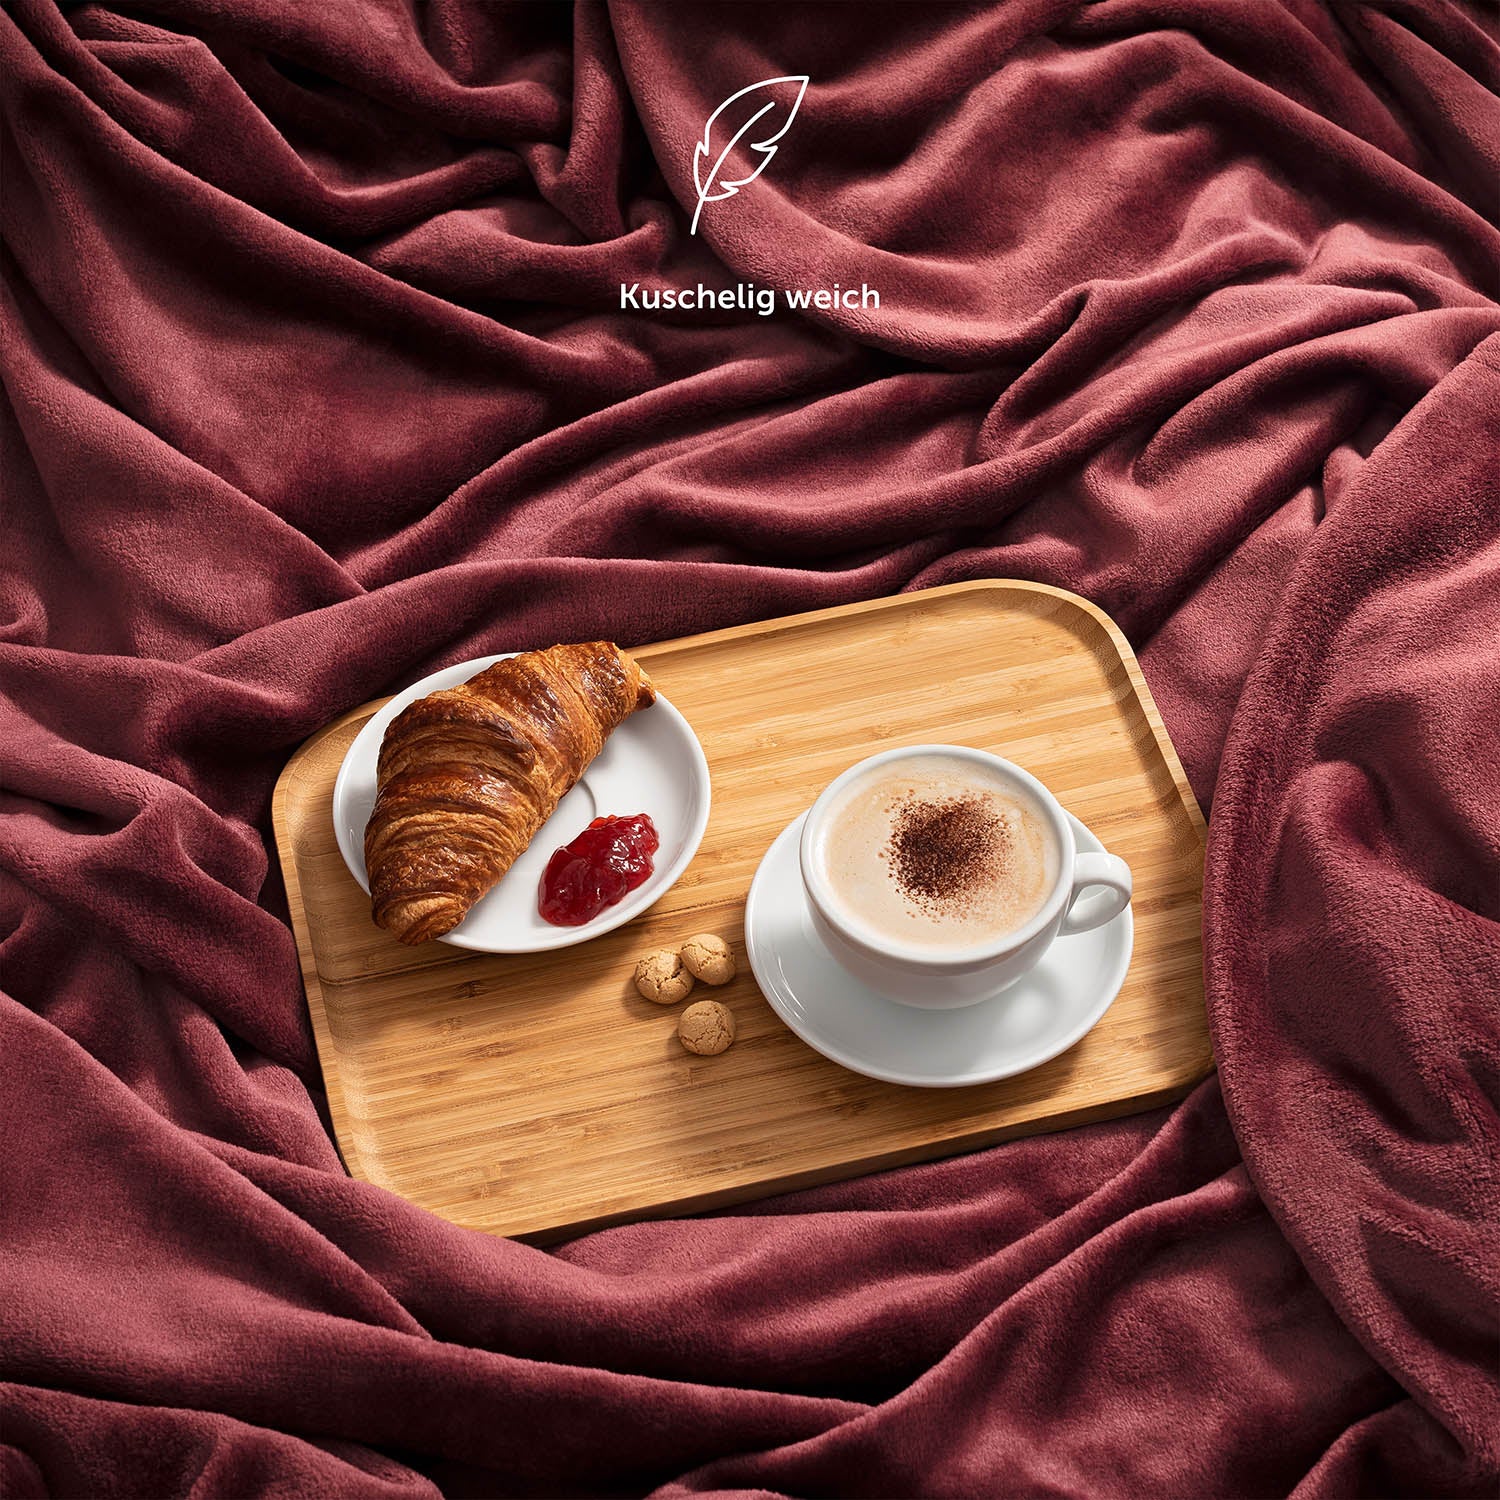 Weinrote Fleece-Kuscheldecke auf einem Bett mit einem Serviertablett mit Frühstück, bestehend aus Kaffee und Croissant, und der Beschreibung 'Kuschelig weich'.